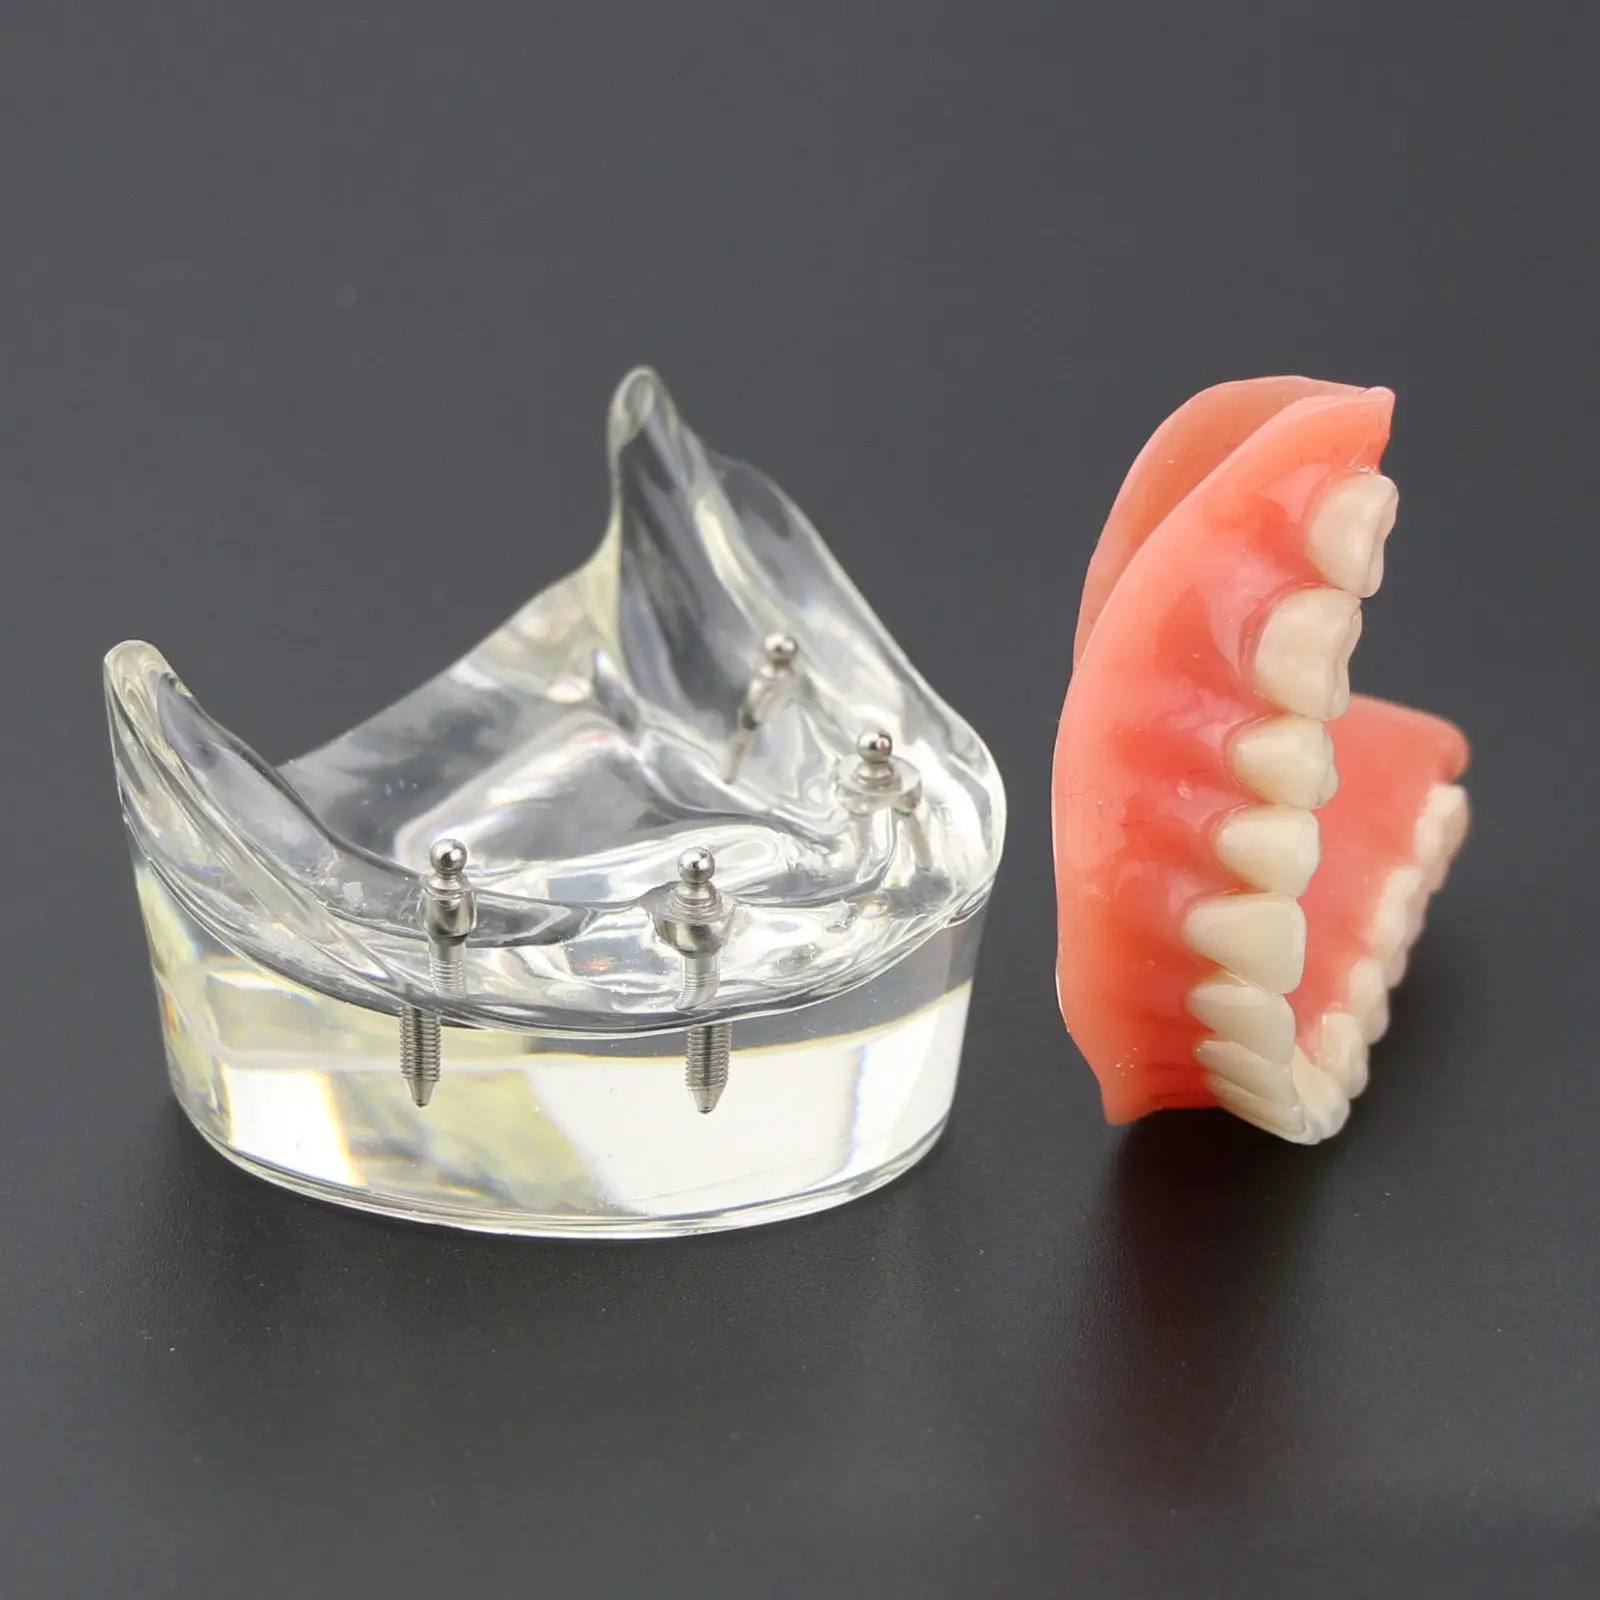 1 шт. стоматологическая модель исследования зубов сверхпротез низший 4 имплантата демонстрационная модель 6002 02